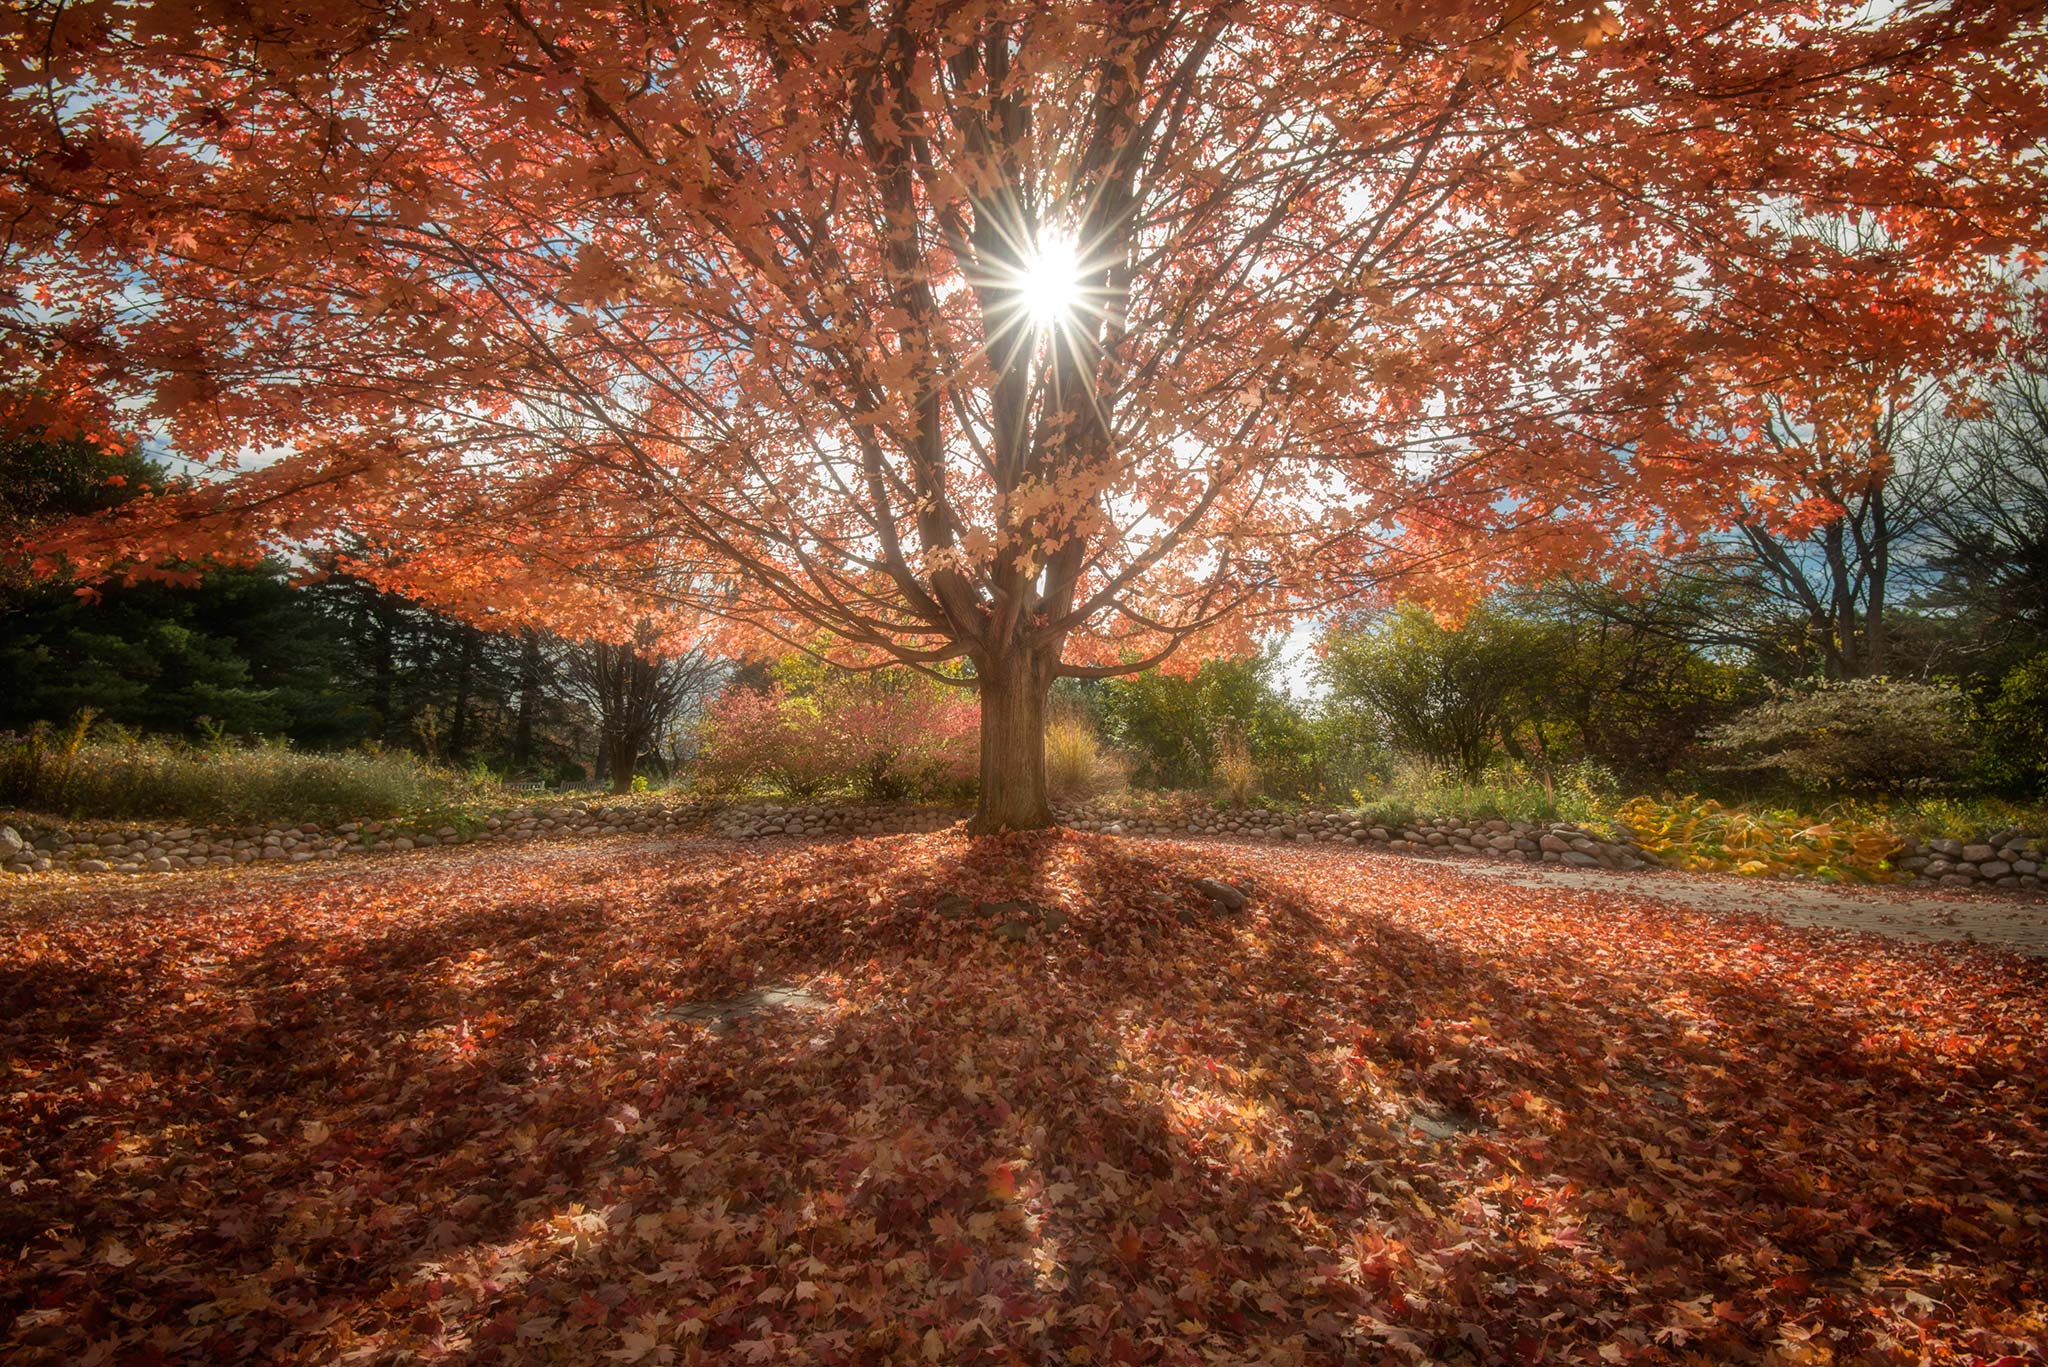 McCrory Garden Tree in Fall